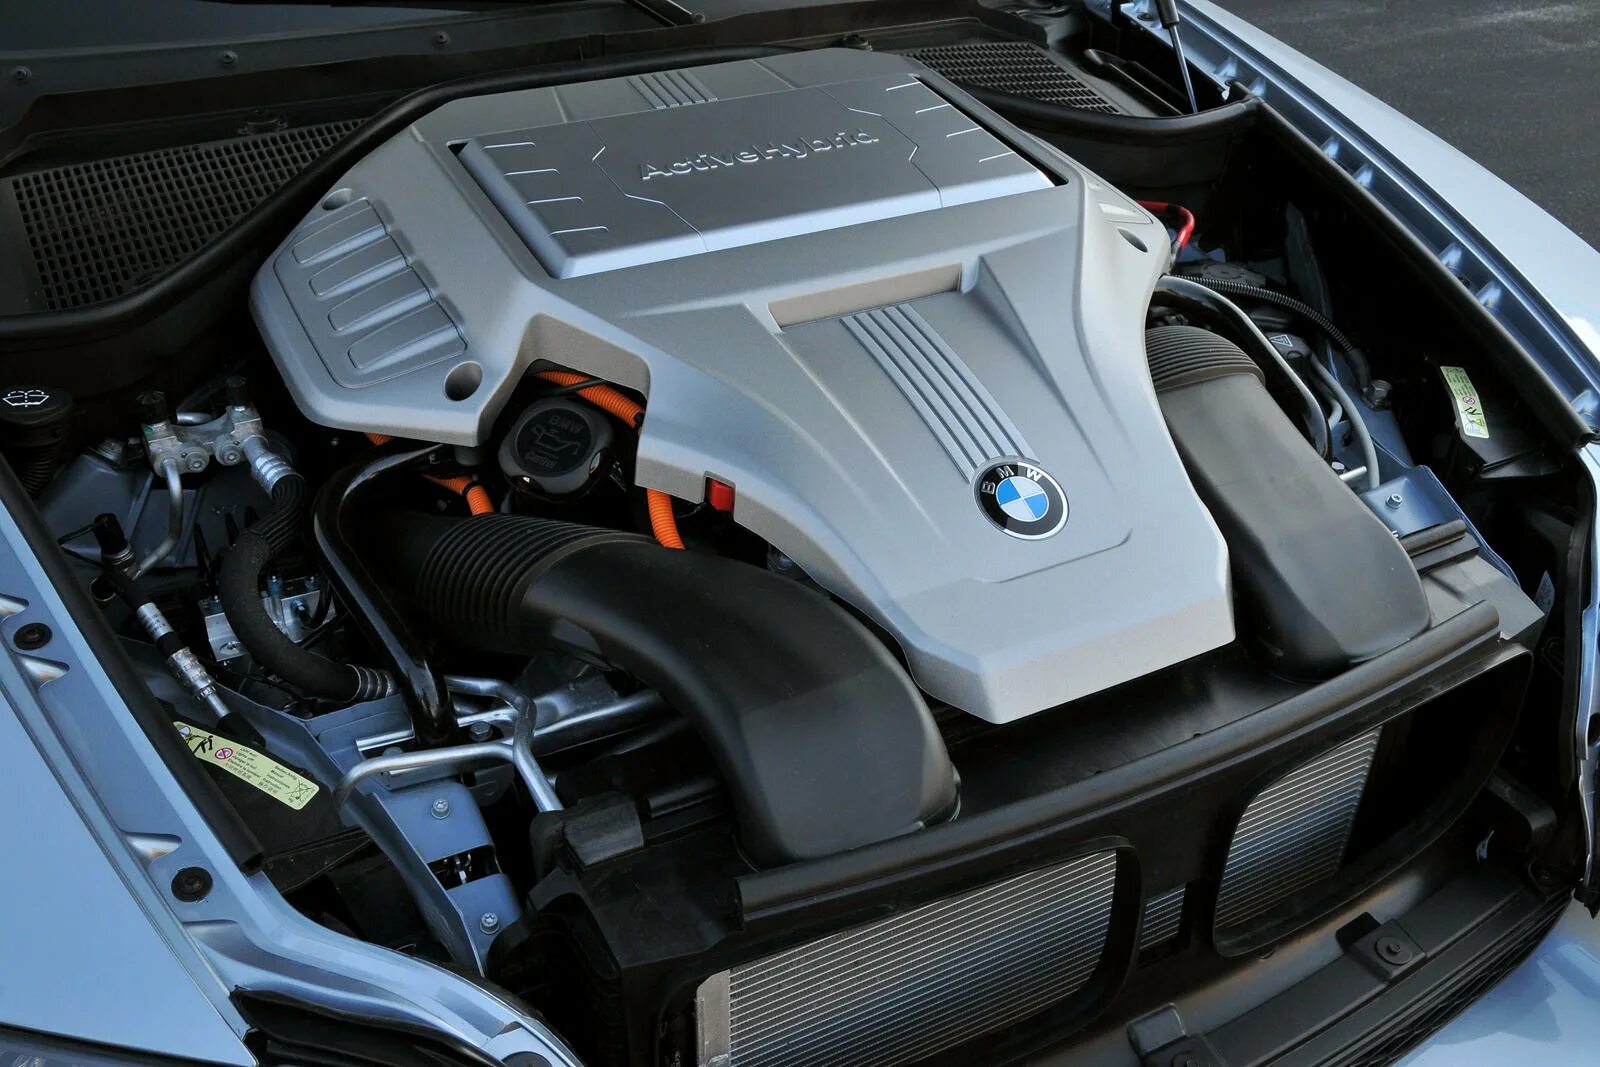 BMW x6 мотор. BMW x6 Hybrid. БМВ x6 гибрид двигатель. BMW x6 e71 под капотом.